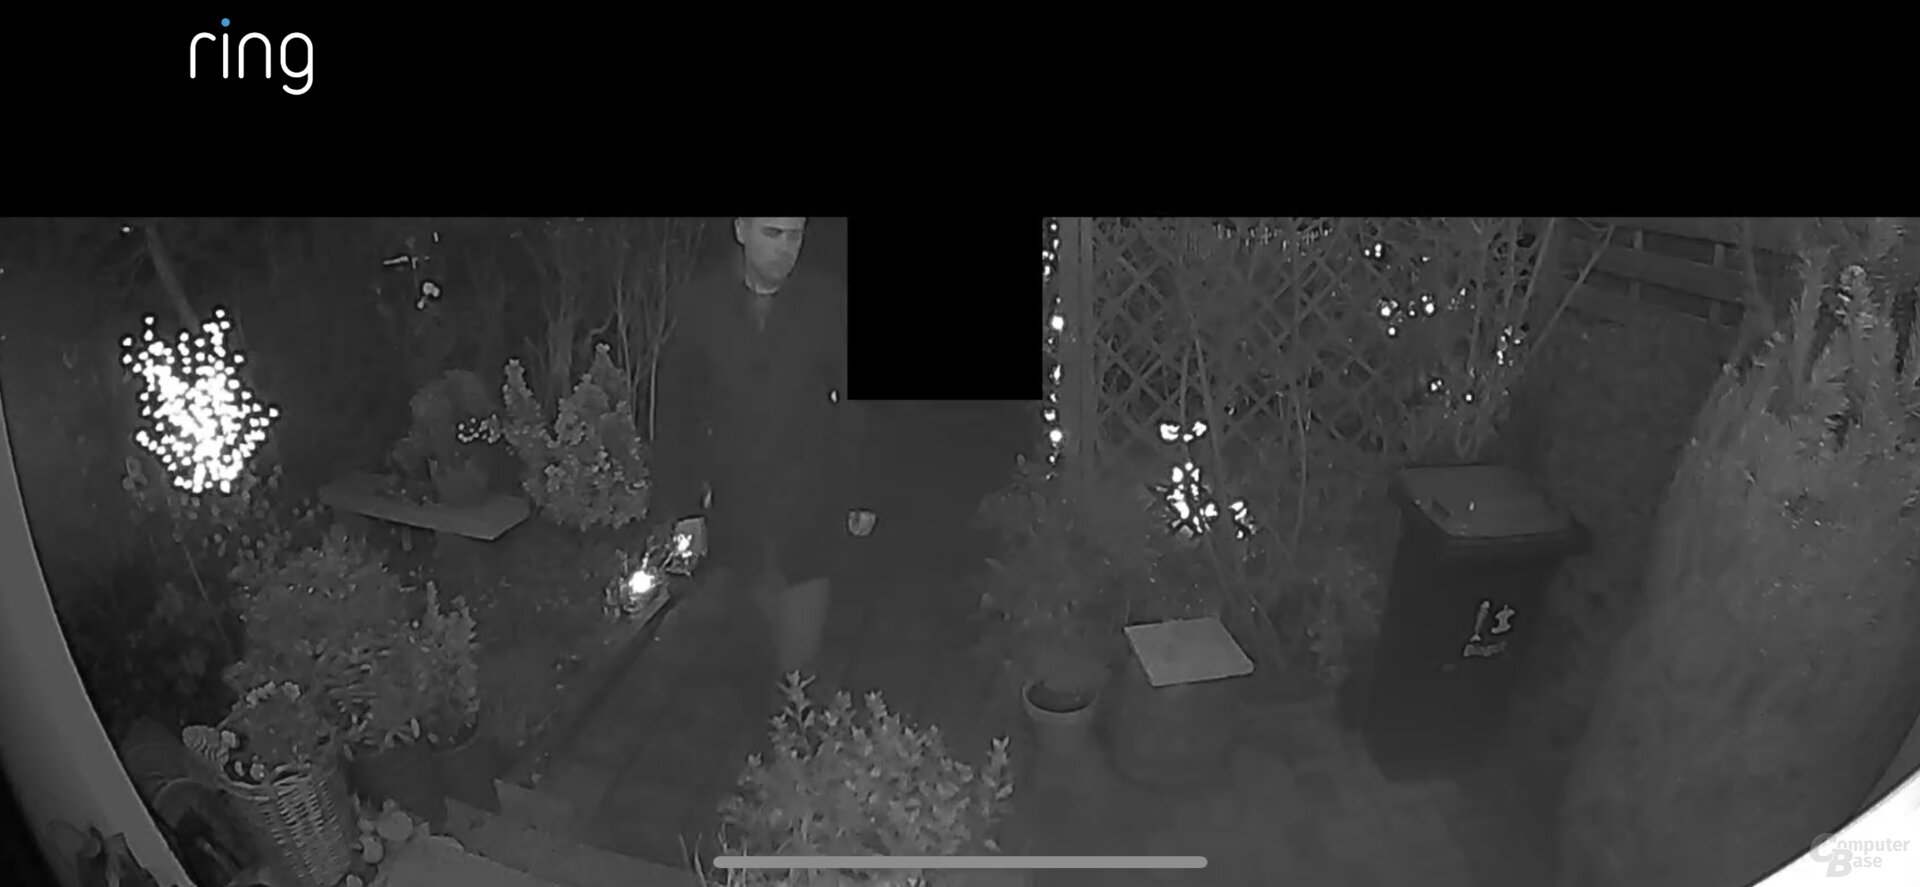 Nachtsicht mit der Ring Video Doorbell 3 Plus (vergrößert)